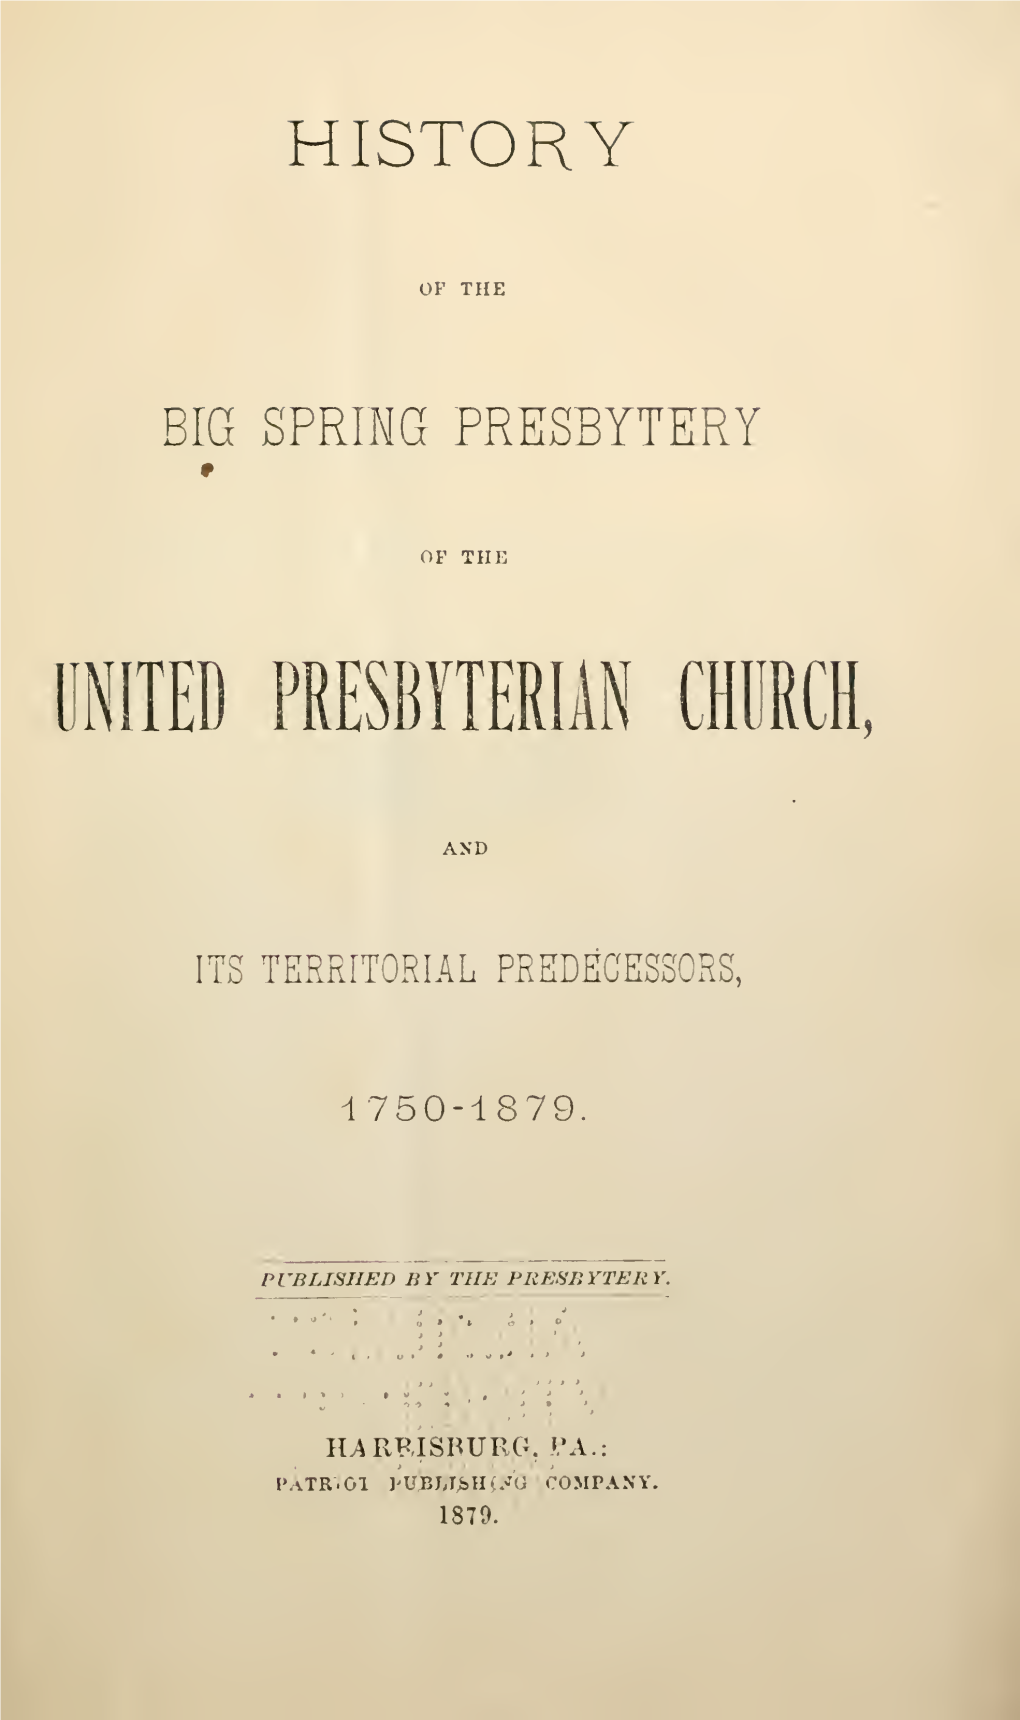 History of the Big Spring Presbytery of the United Presbyterian Church